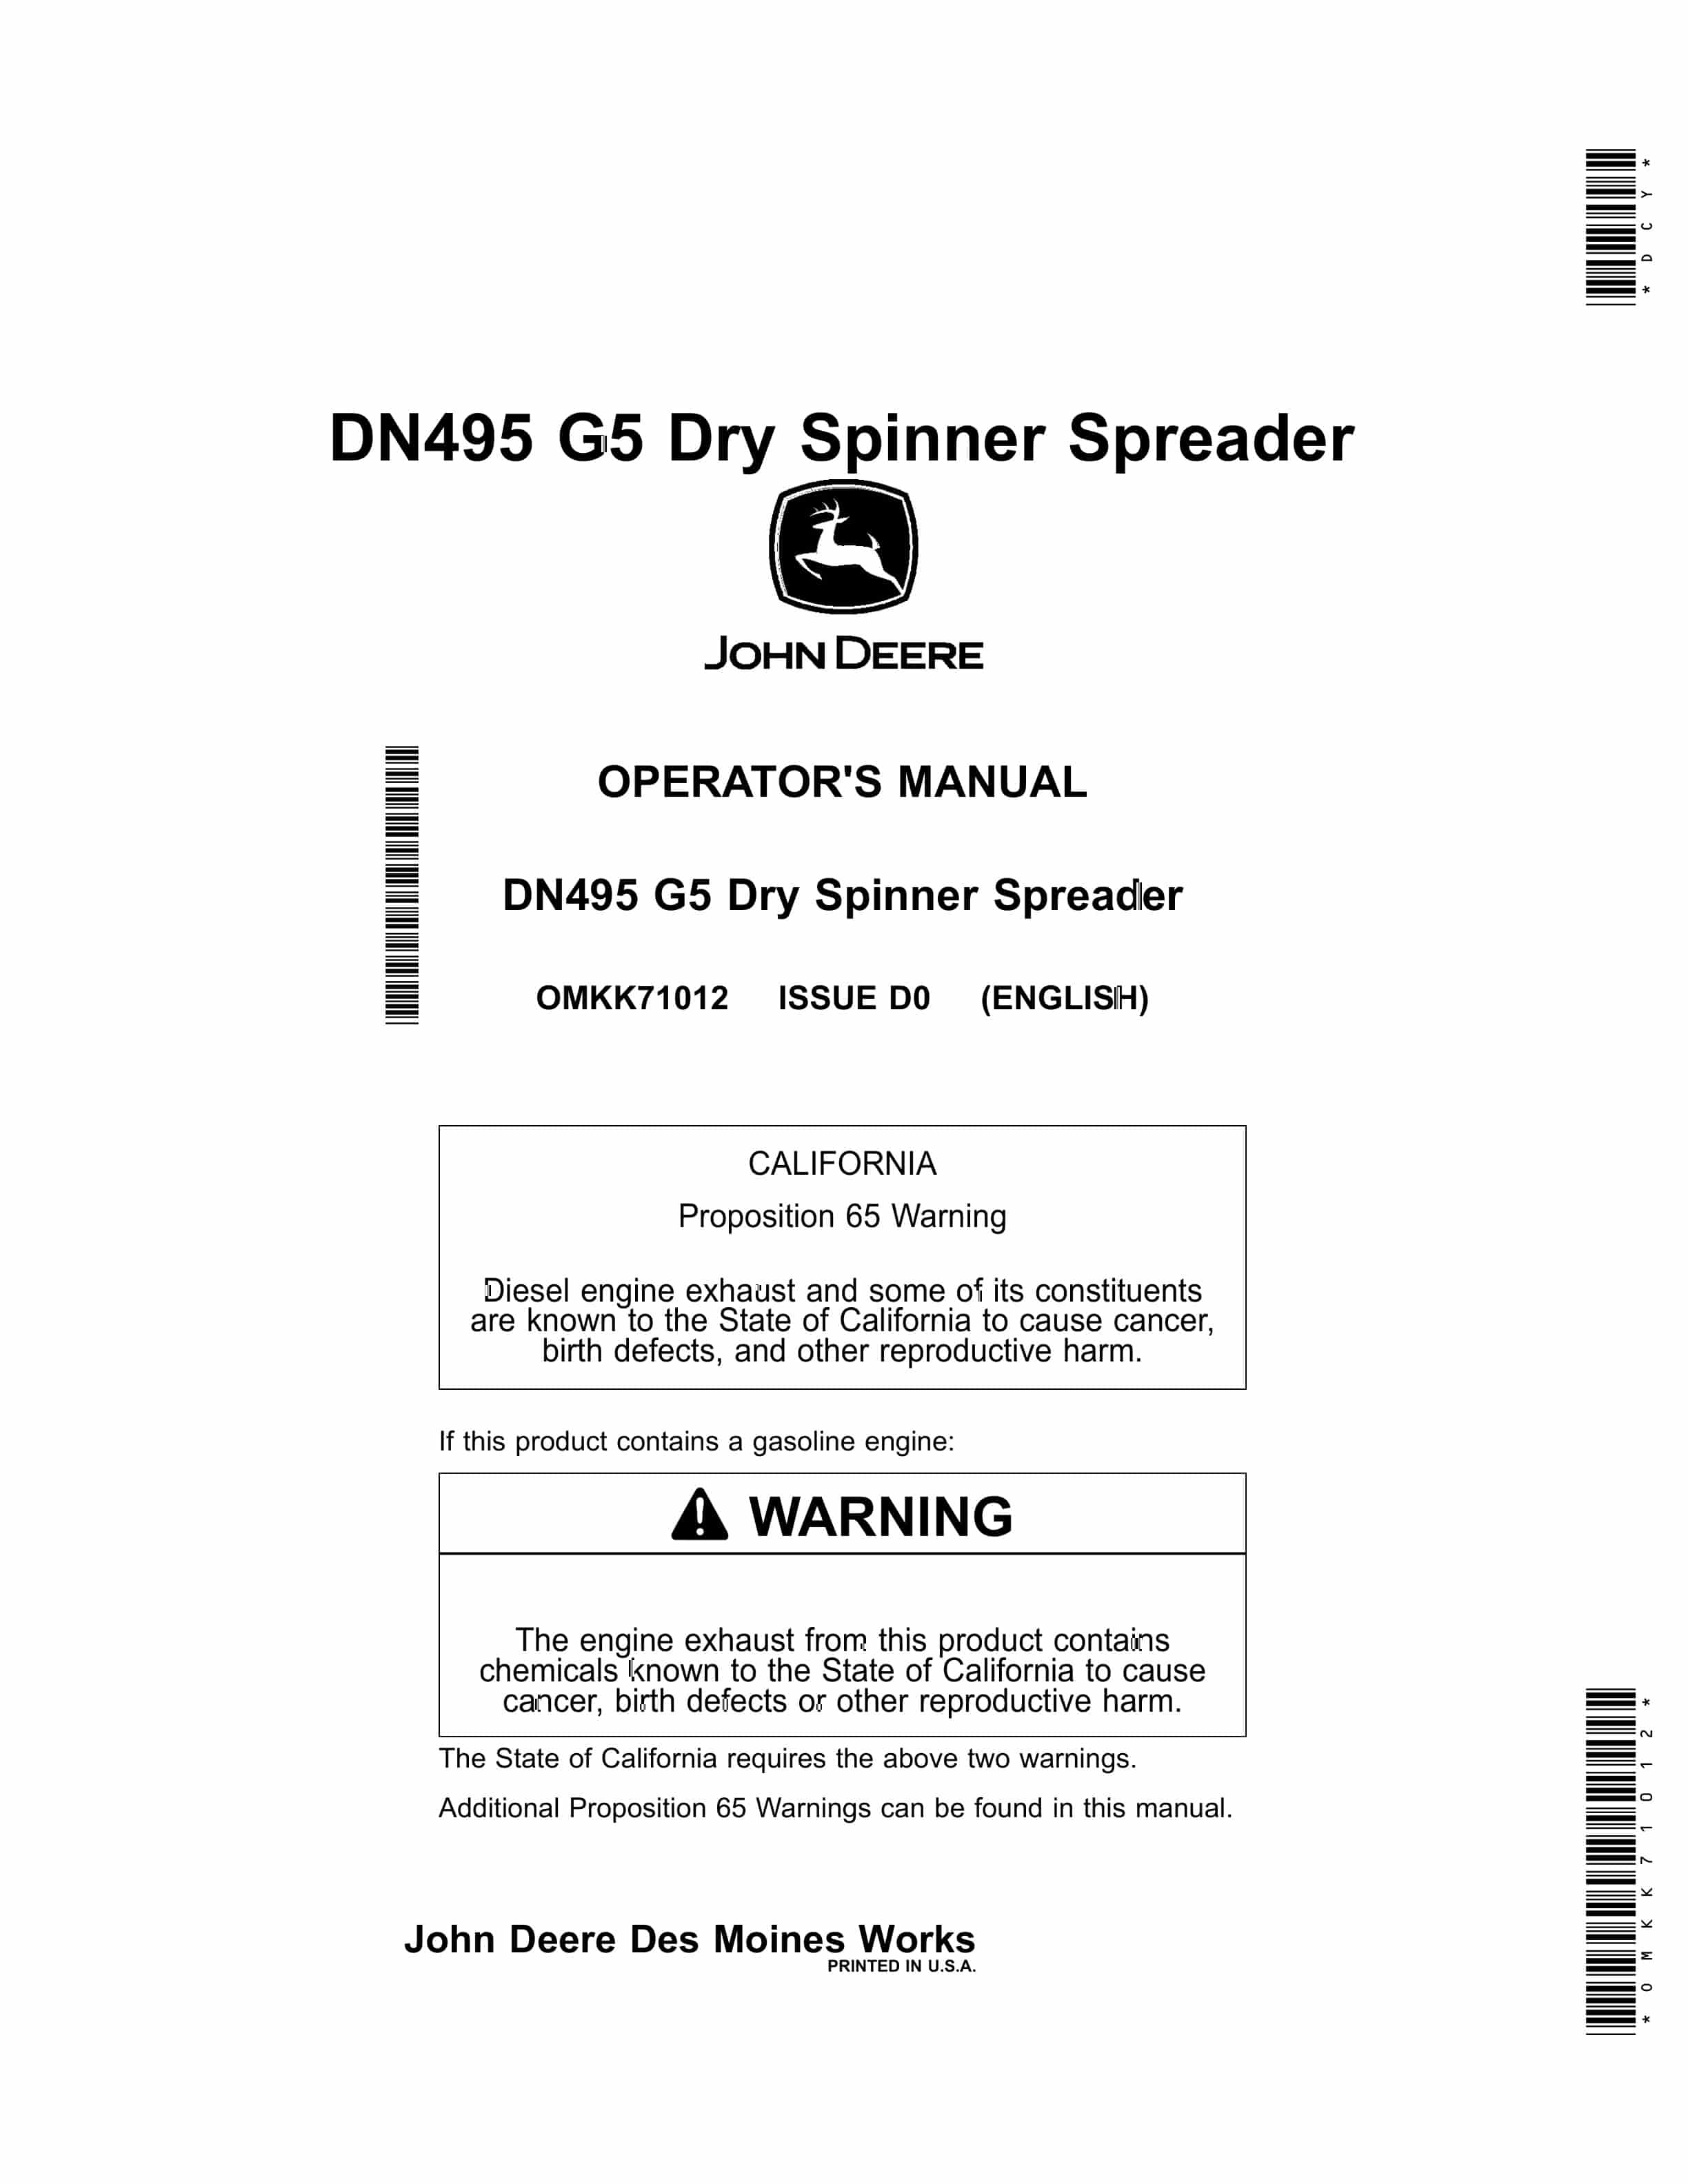 John Deere DN495 G5 Dry Spinner Spreader Operator Manual OMKK71012 1